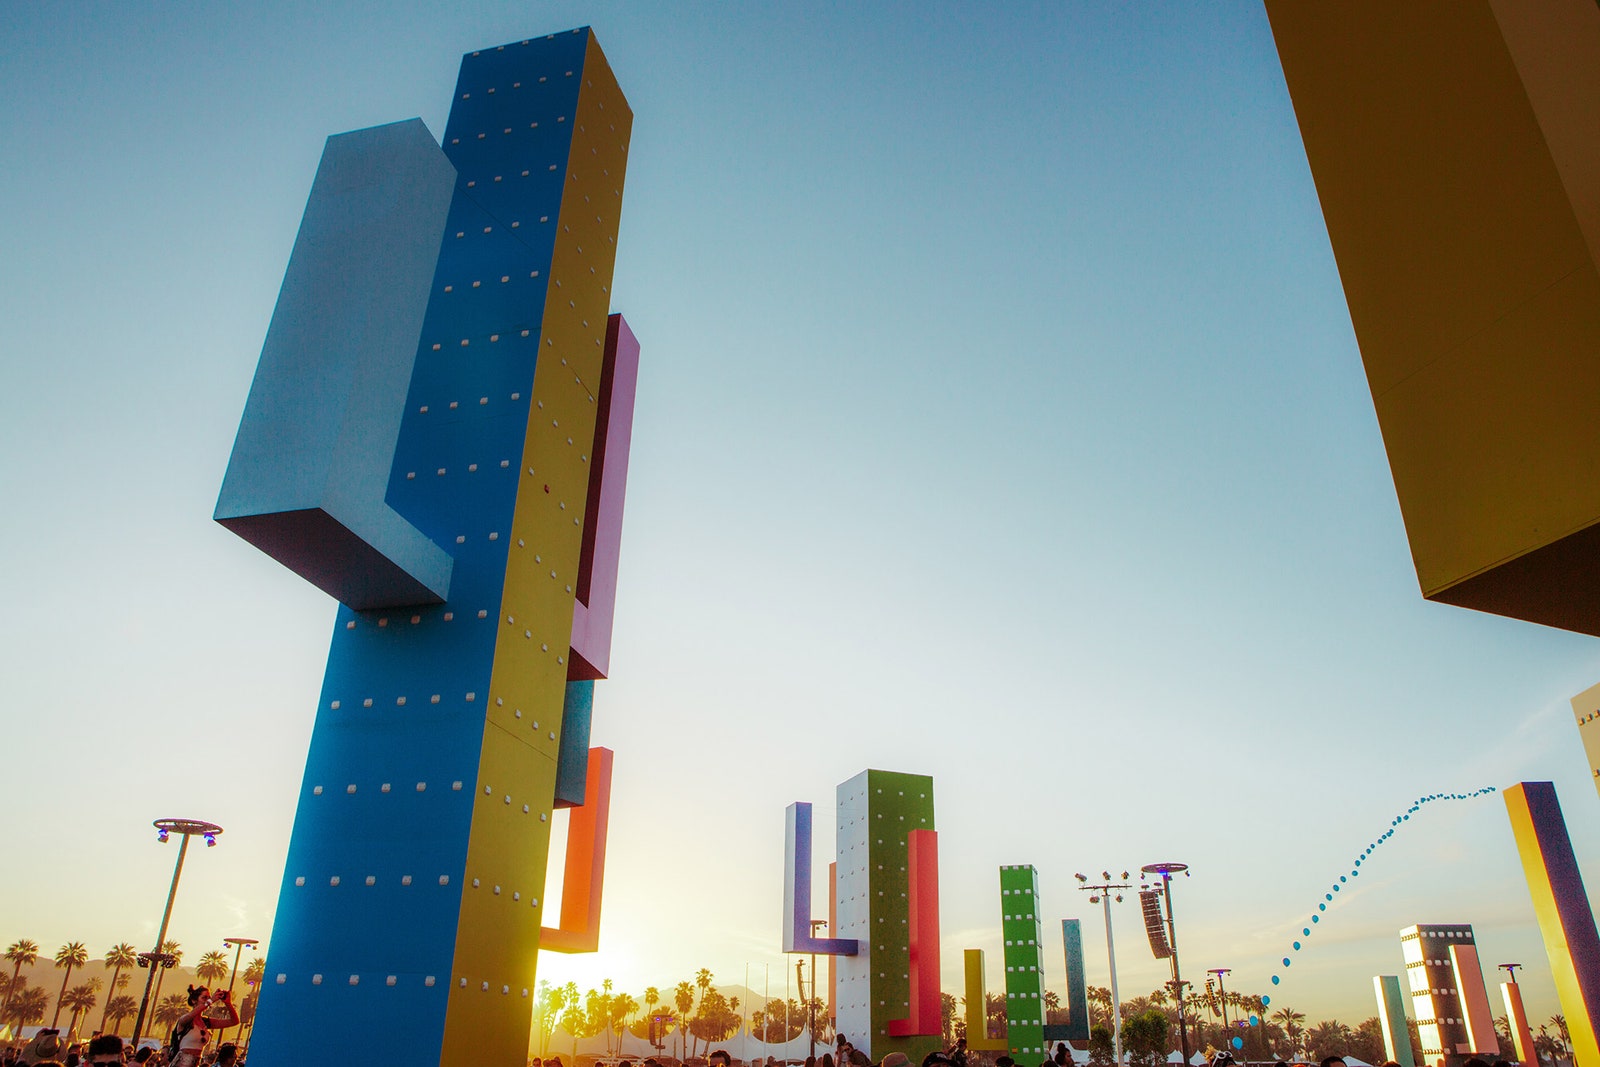 Фестиваль Coachella 2019 5 архитектурных инсталляций